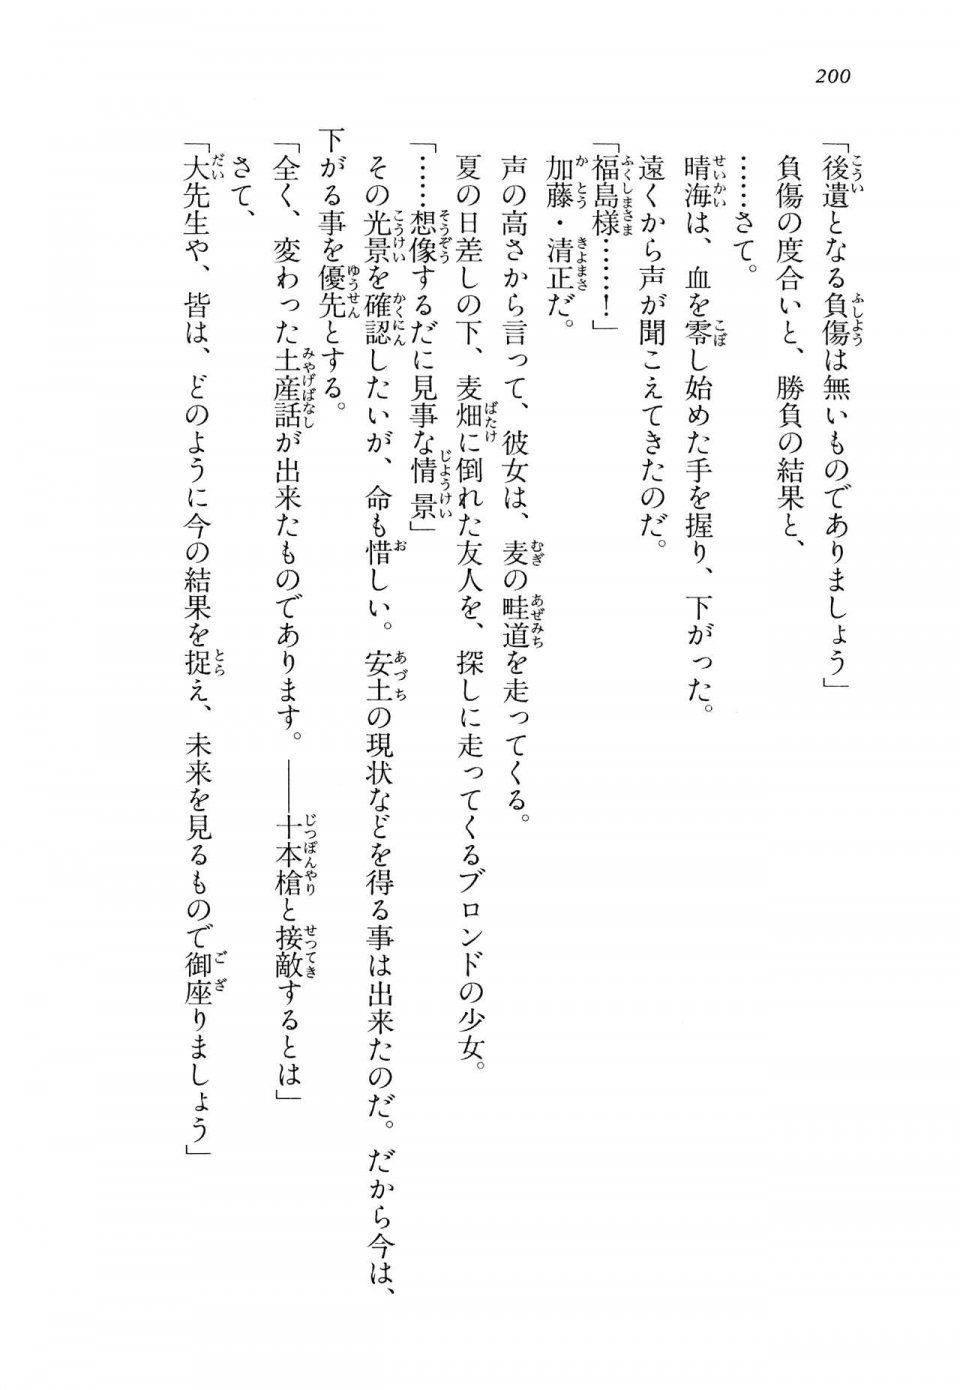 Kyoukai Senjou no Horizon LN Vol 14(6B) - Photo #200